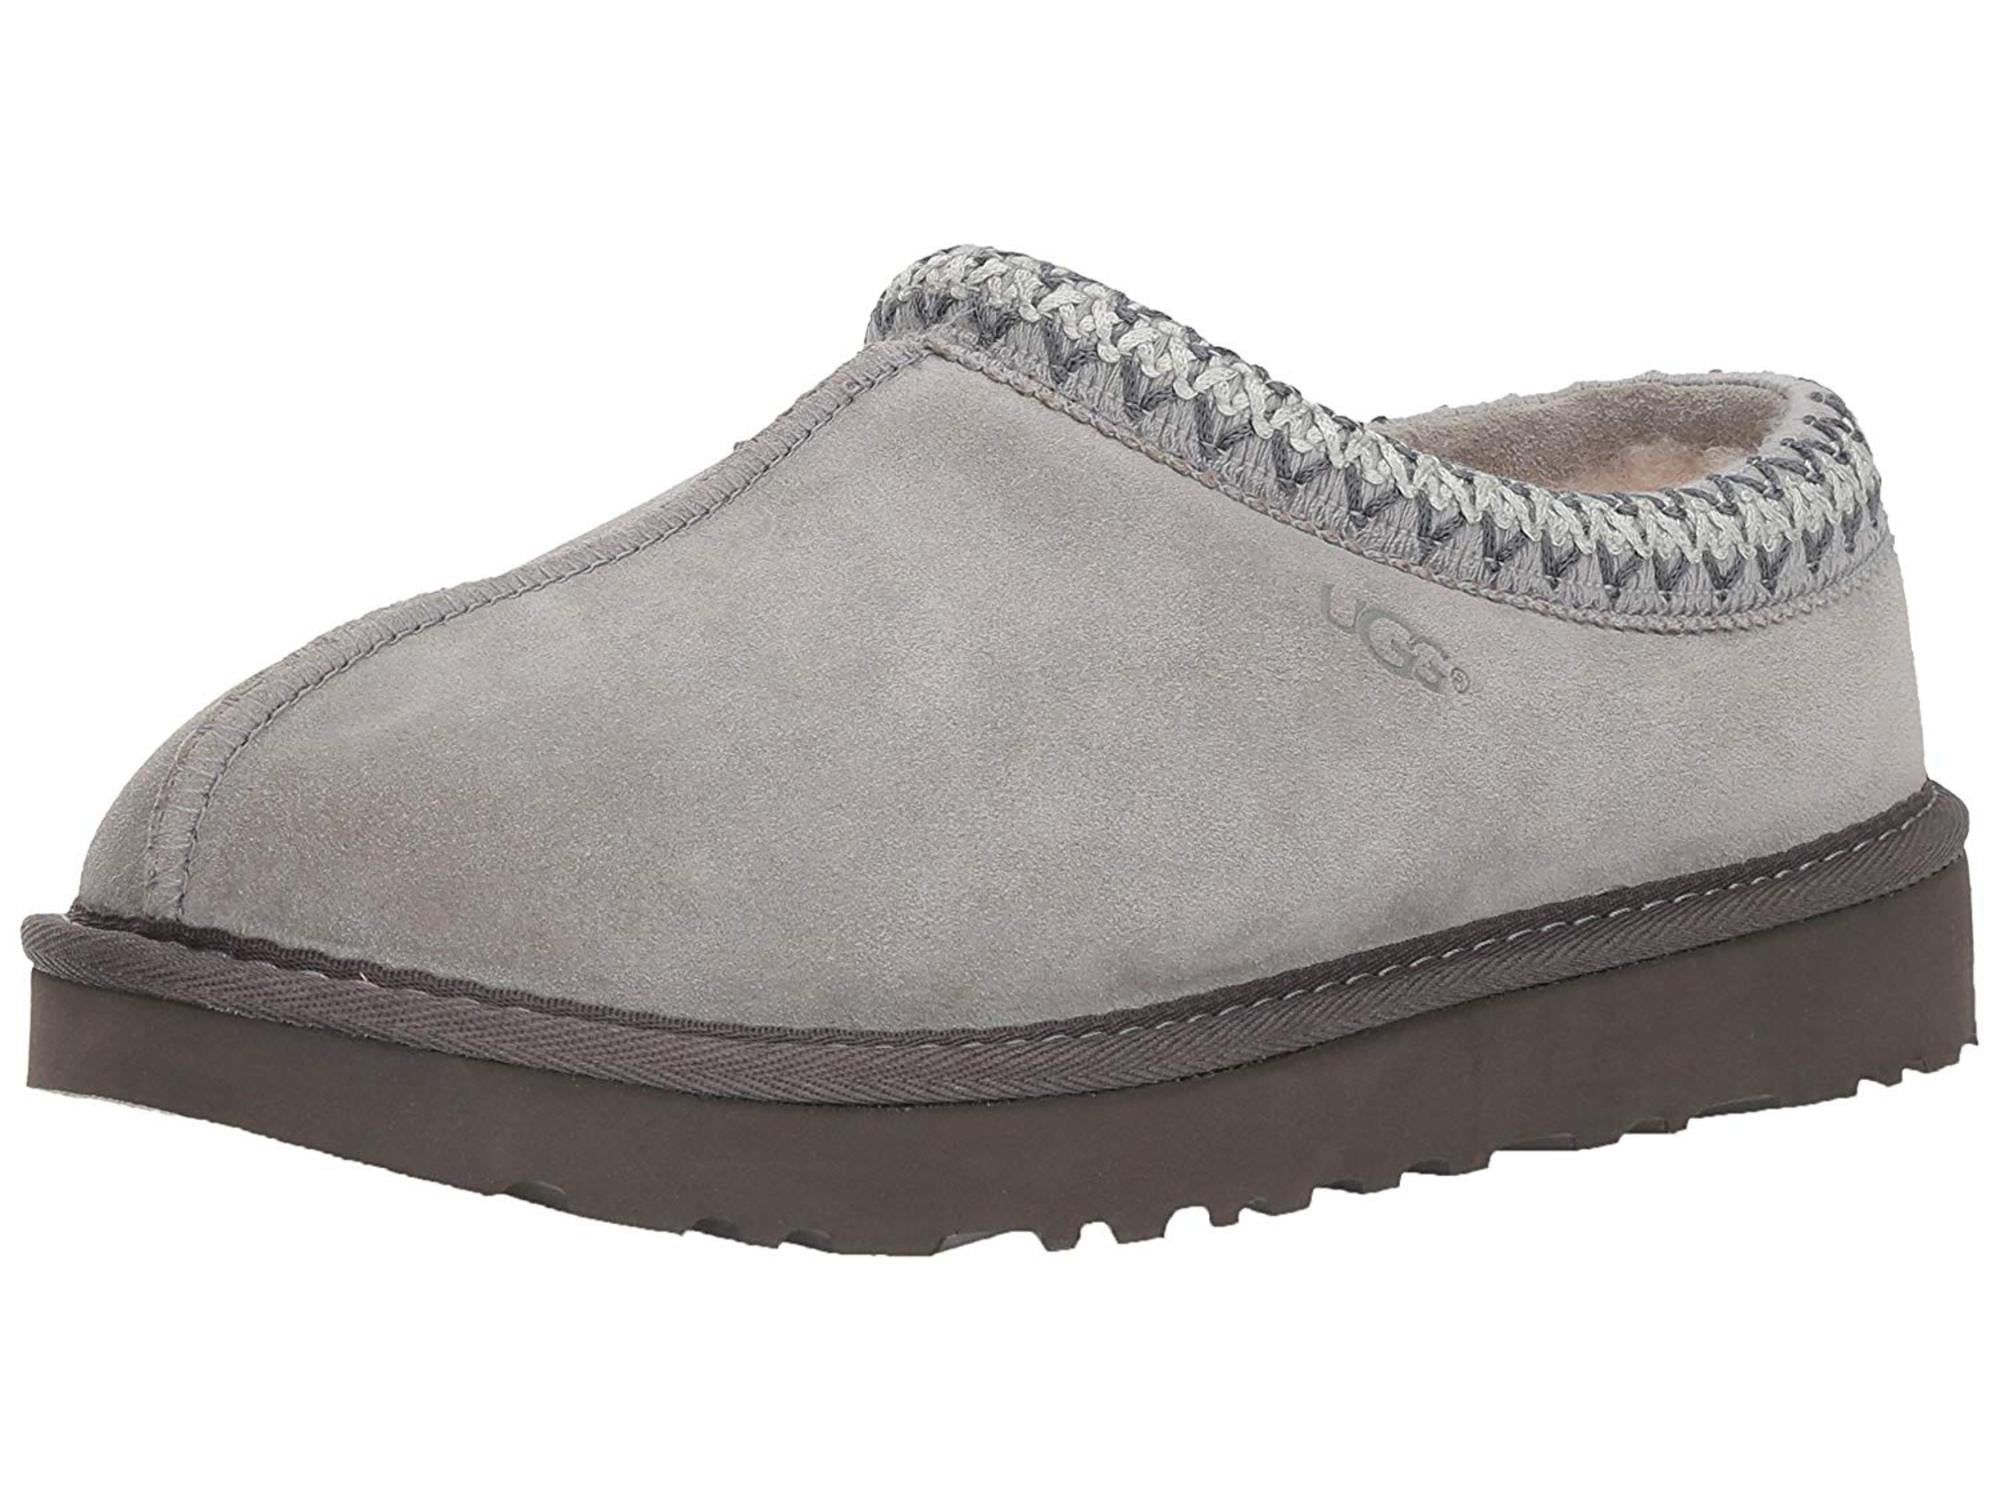 Buy > uggs tasman slippers womens > in stock